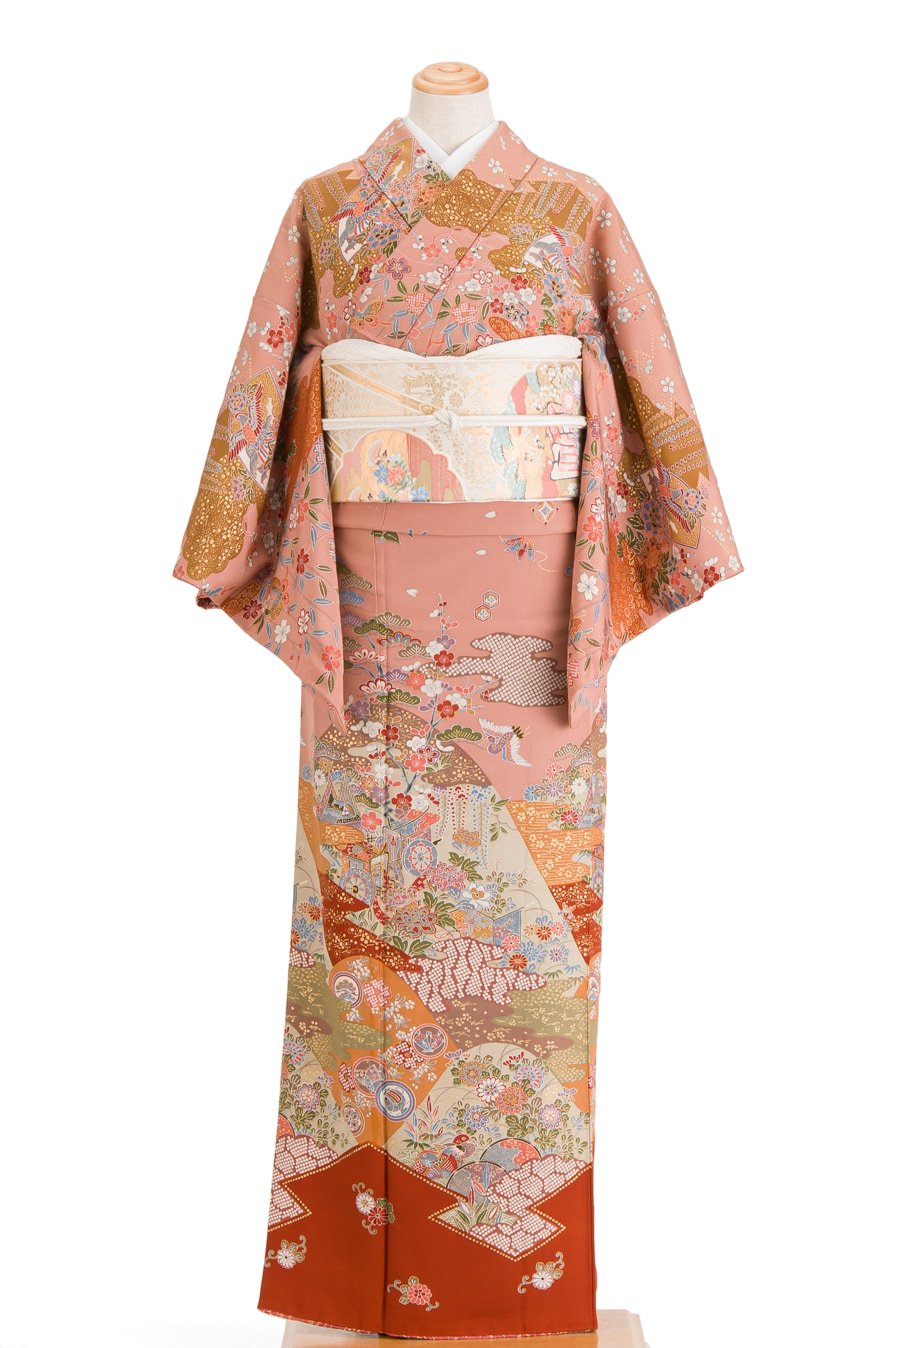 総柄訪問着 桜に蝶 宝尽くし紋など からん::アンティーク着物・リサイクル着物の通販サイト